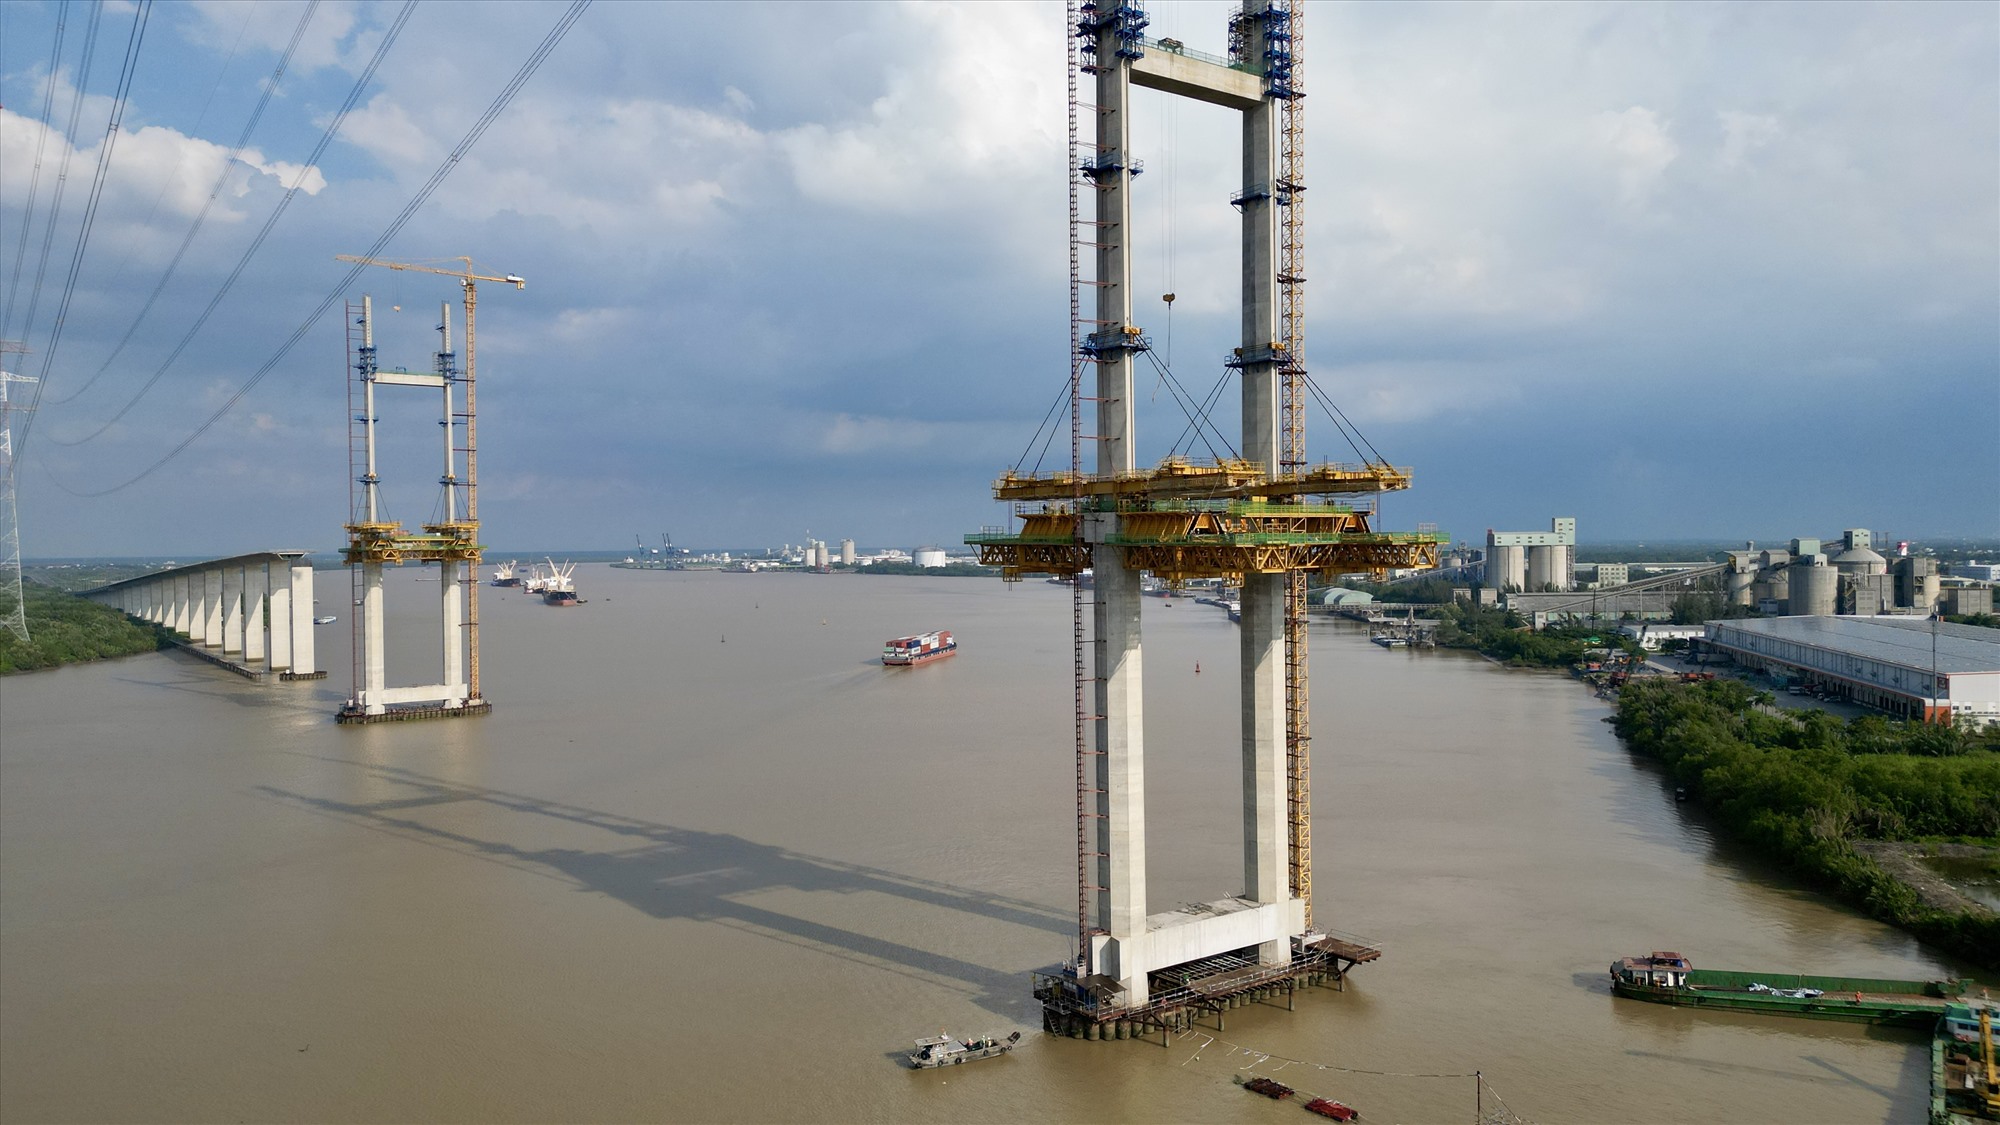 Điểm nhấn công trình là hai trụ cầu cao 150 m, cao nhất Việt Nam thời điểm hiện tại. Hiện cầu Bình Khánh đã thi công được khoảng 70% tiến độ vào tháng 12/2018 và ngưng từ đó đến nay.